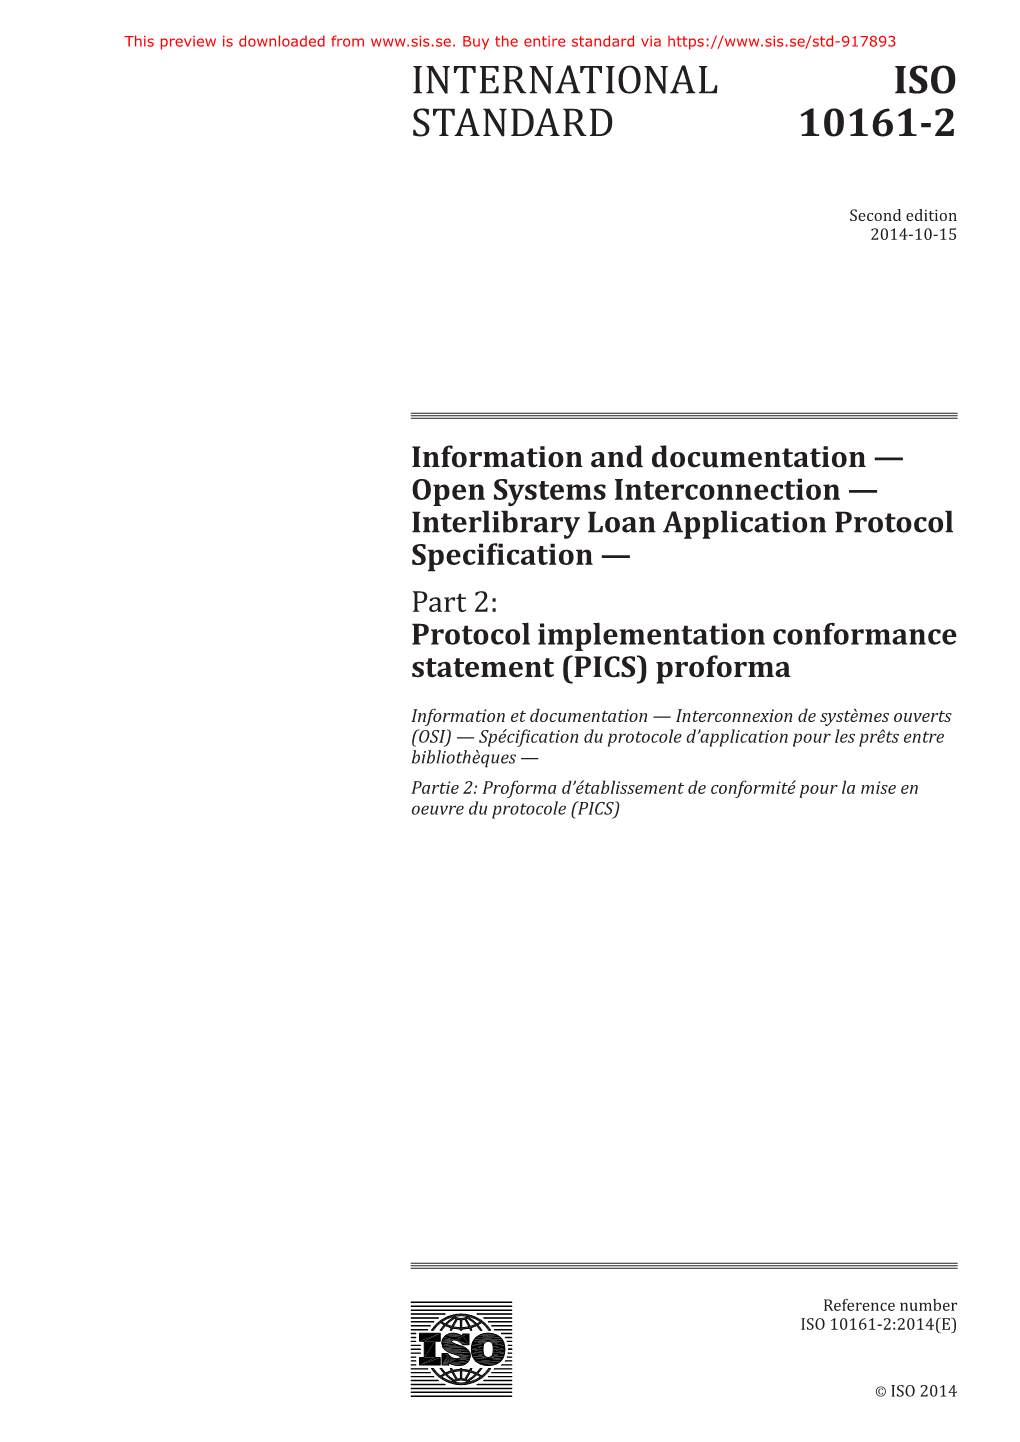 International Standard Iso 10161-2:2014(E)